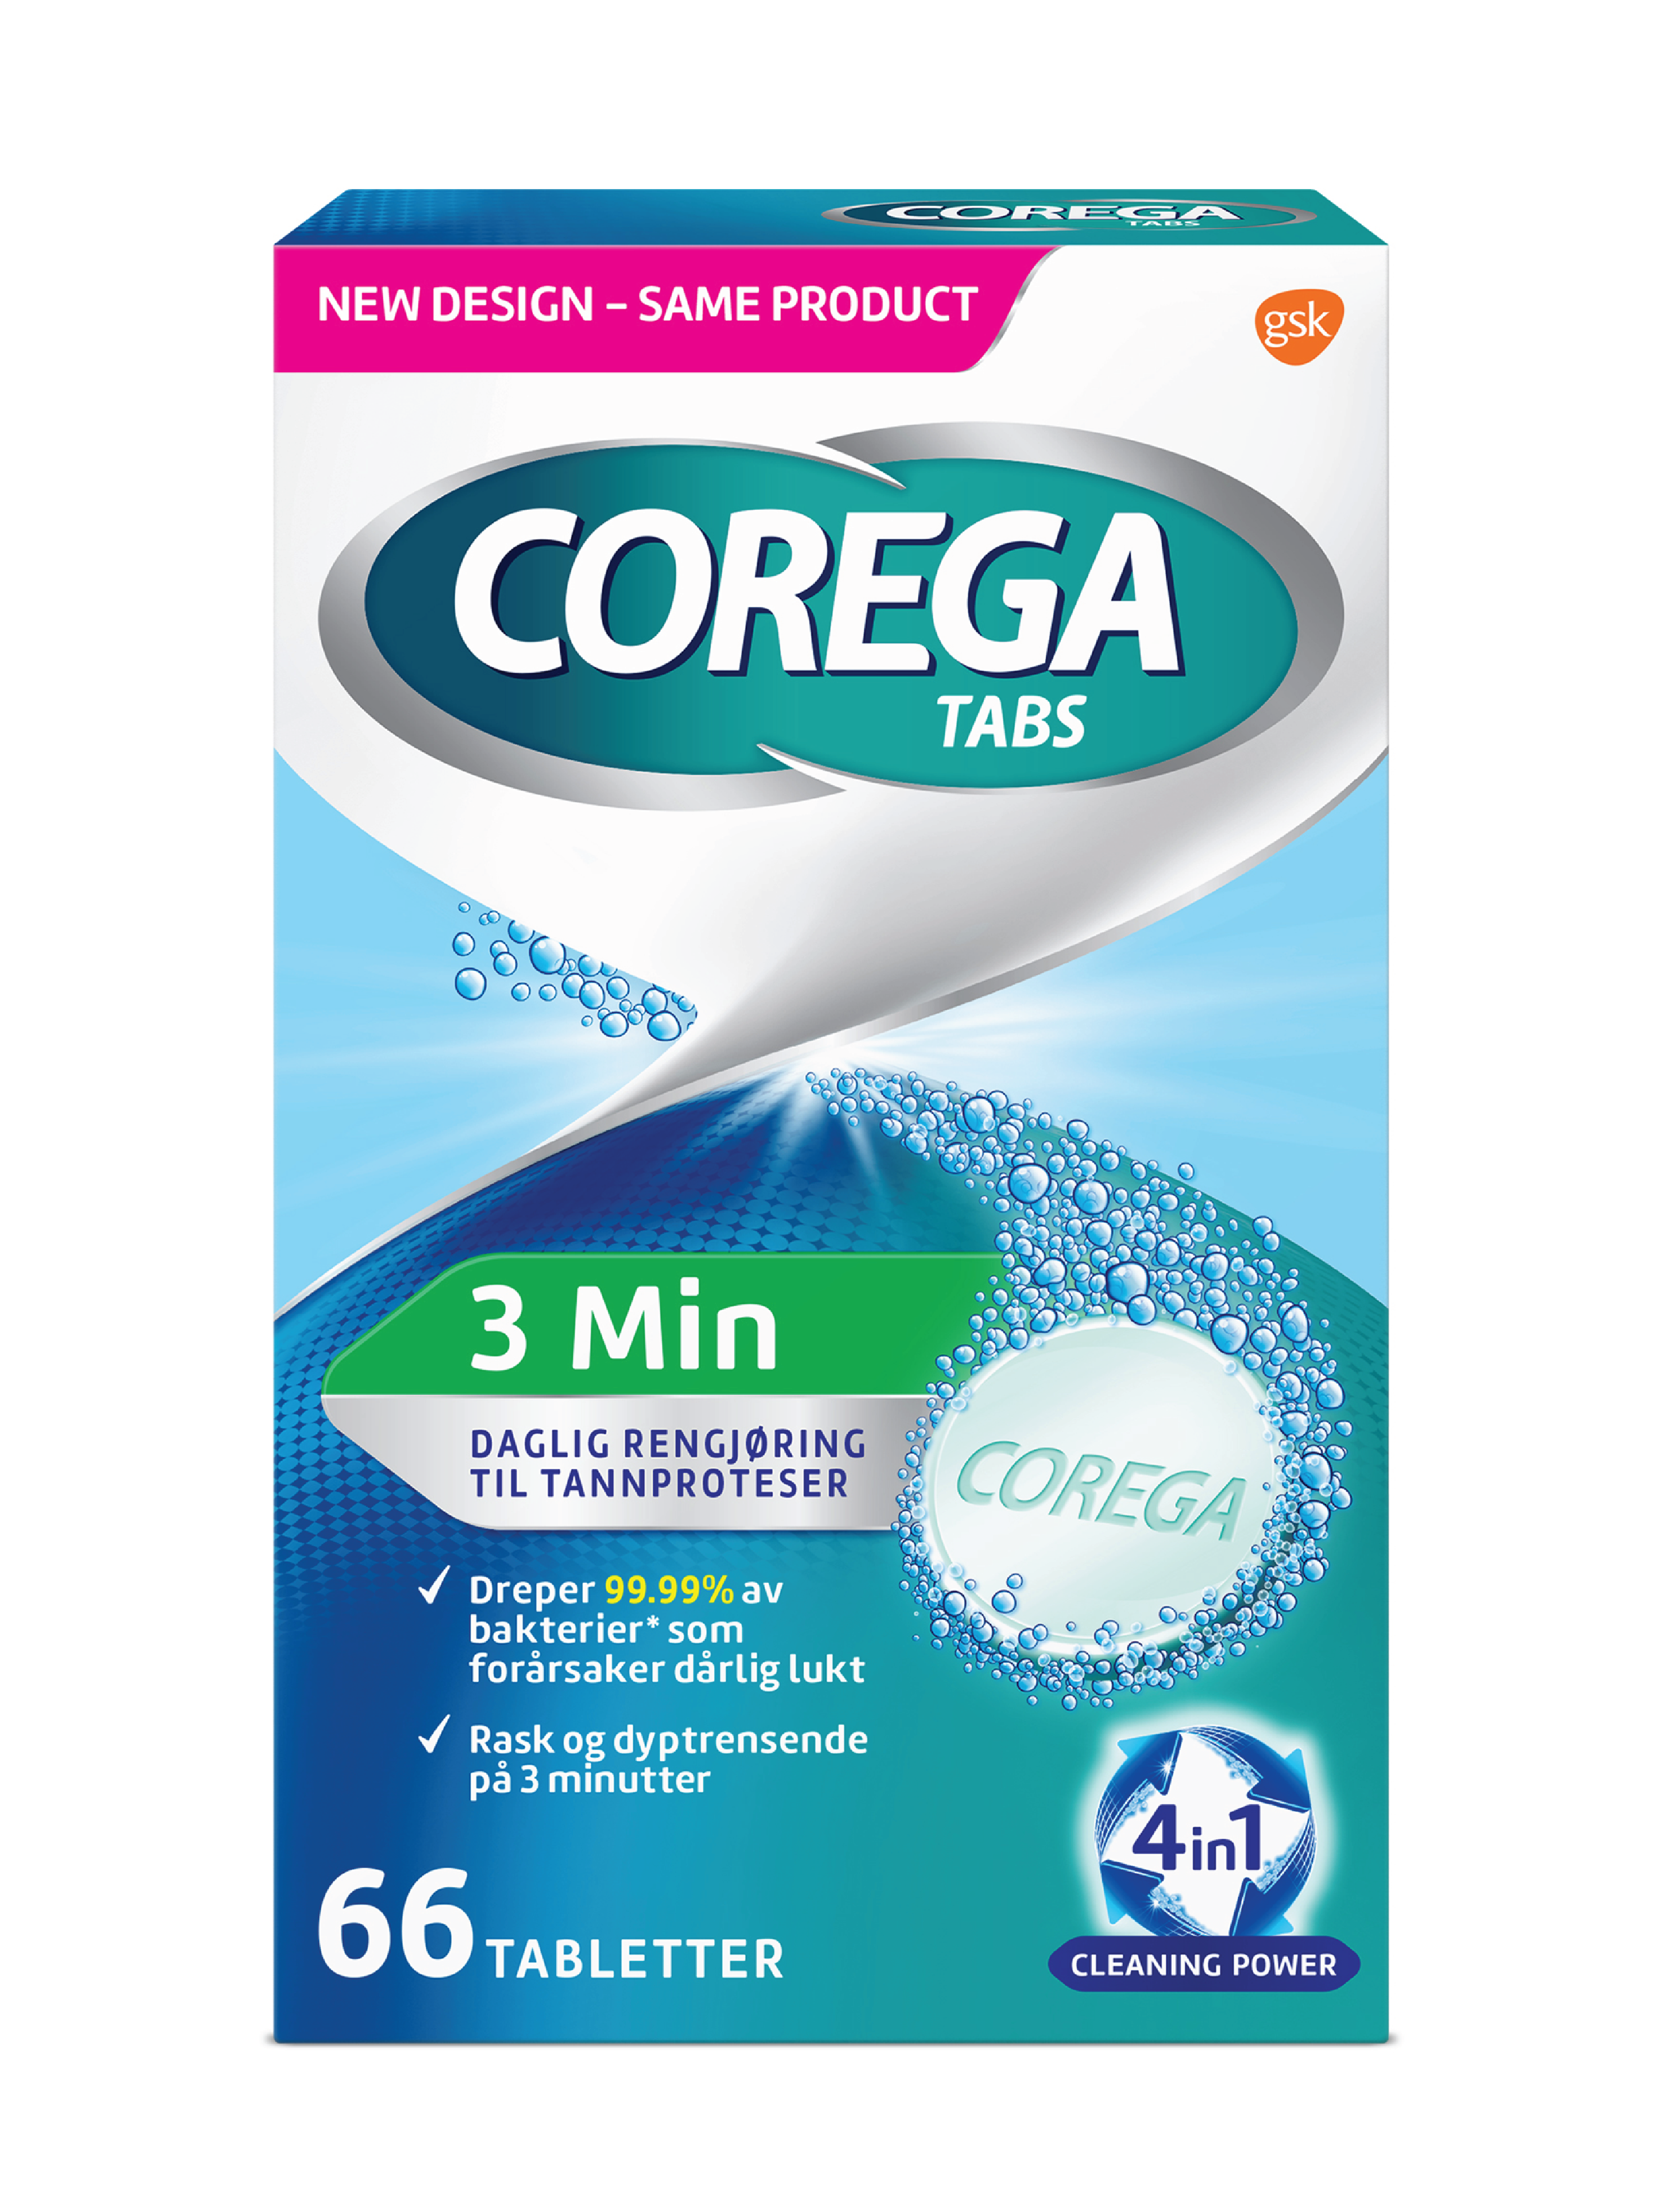 Corega Tabs 3 min rensetabletter, 66 tabletter